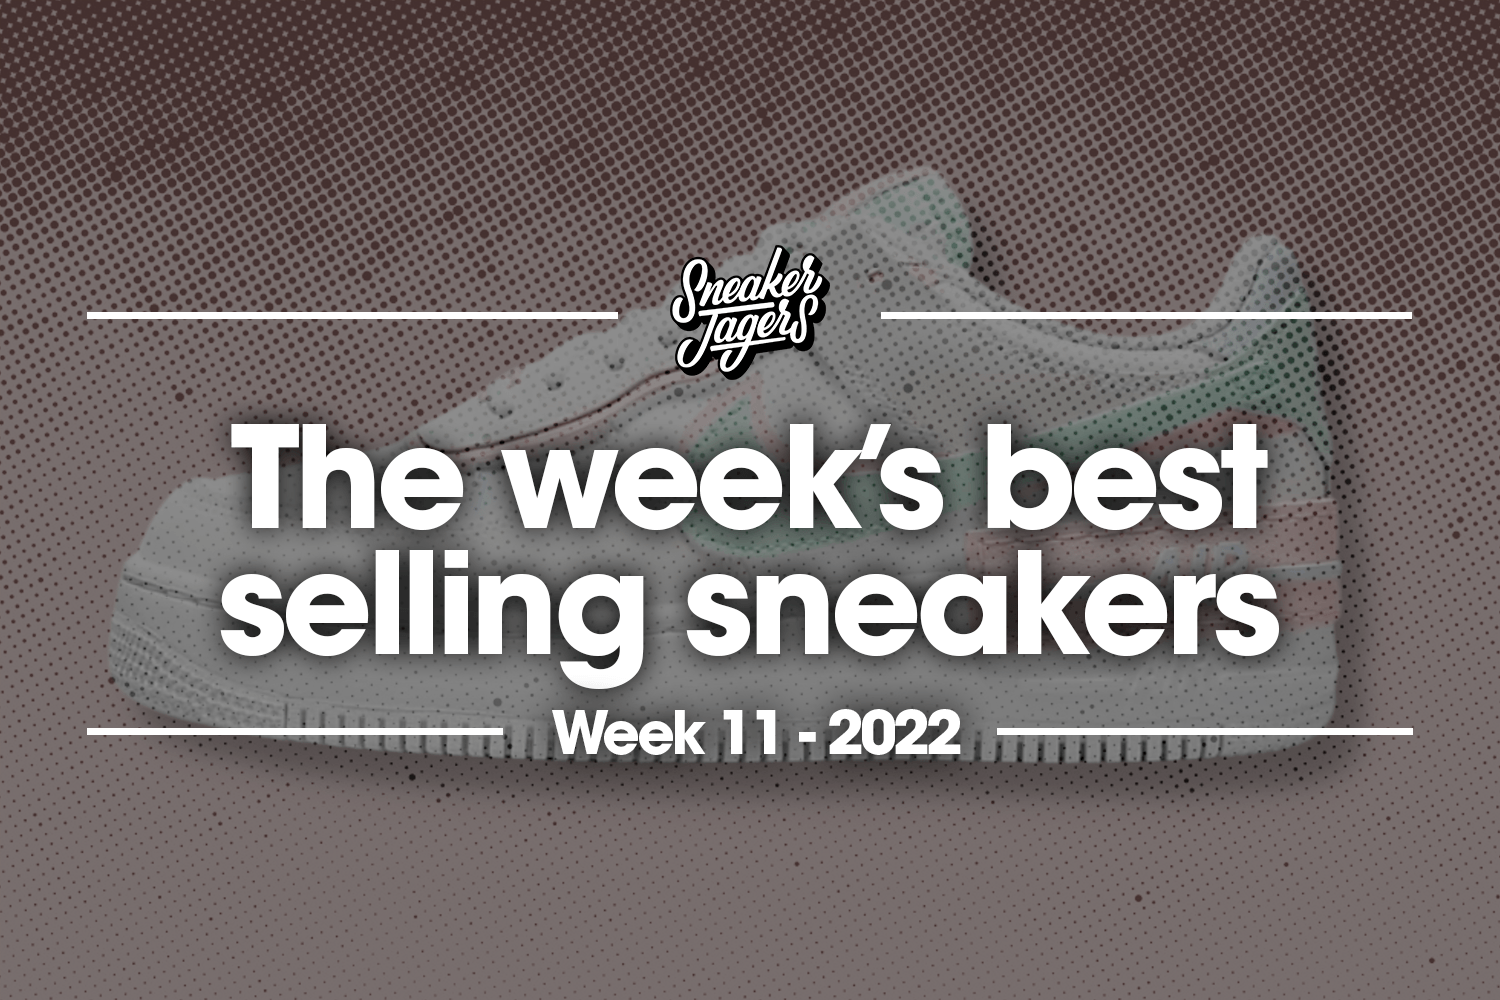 De 5 bestverkochte sneakers van week 11